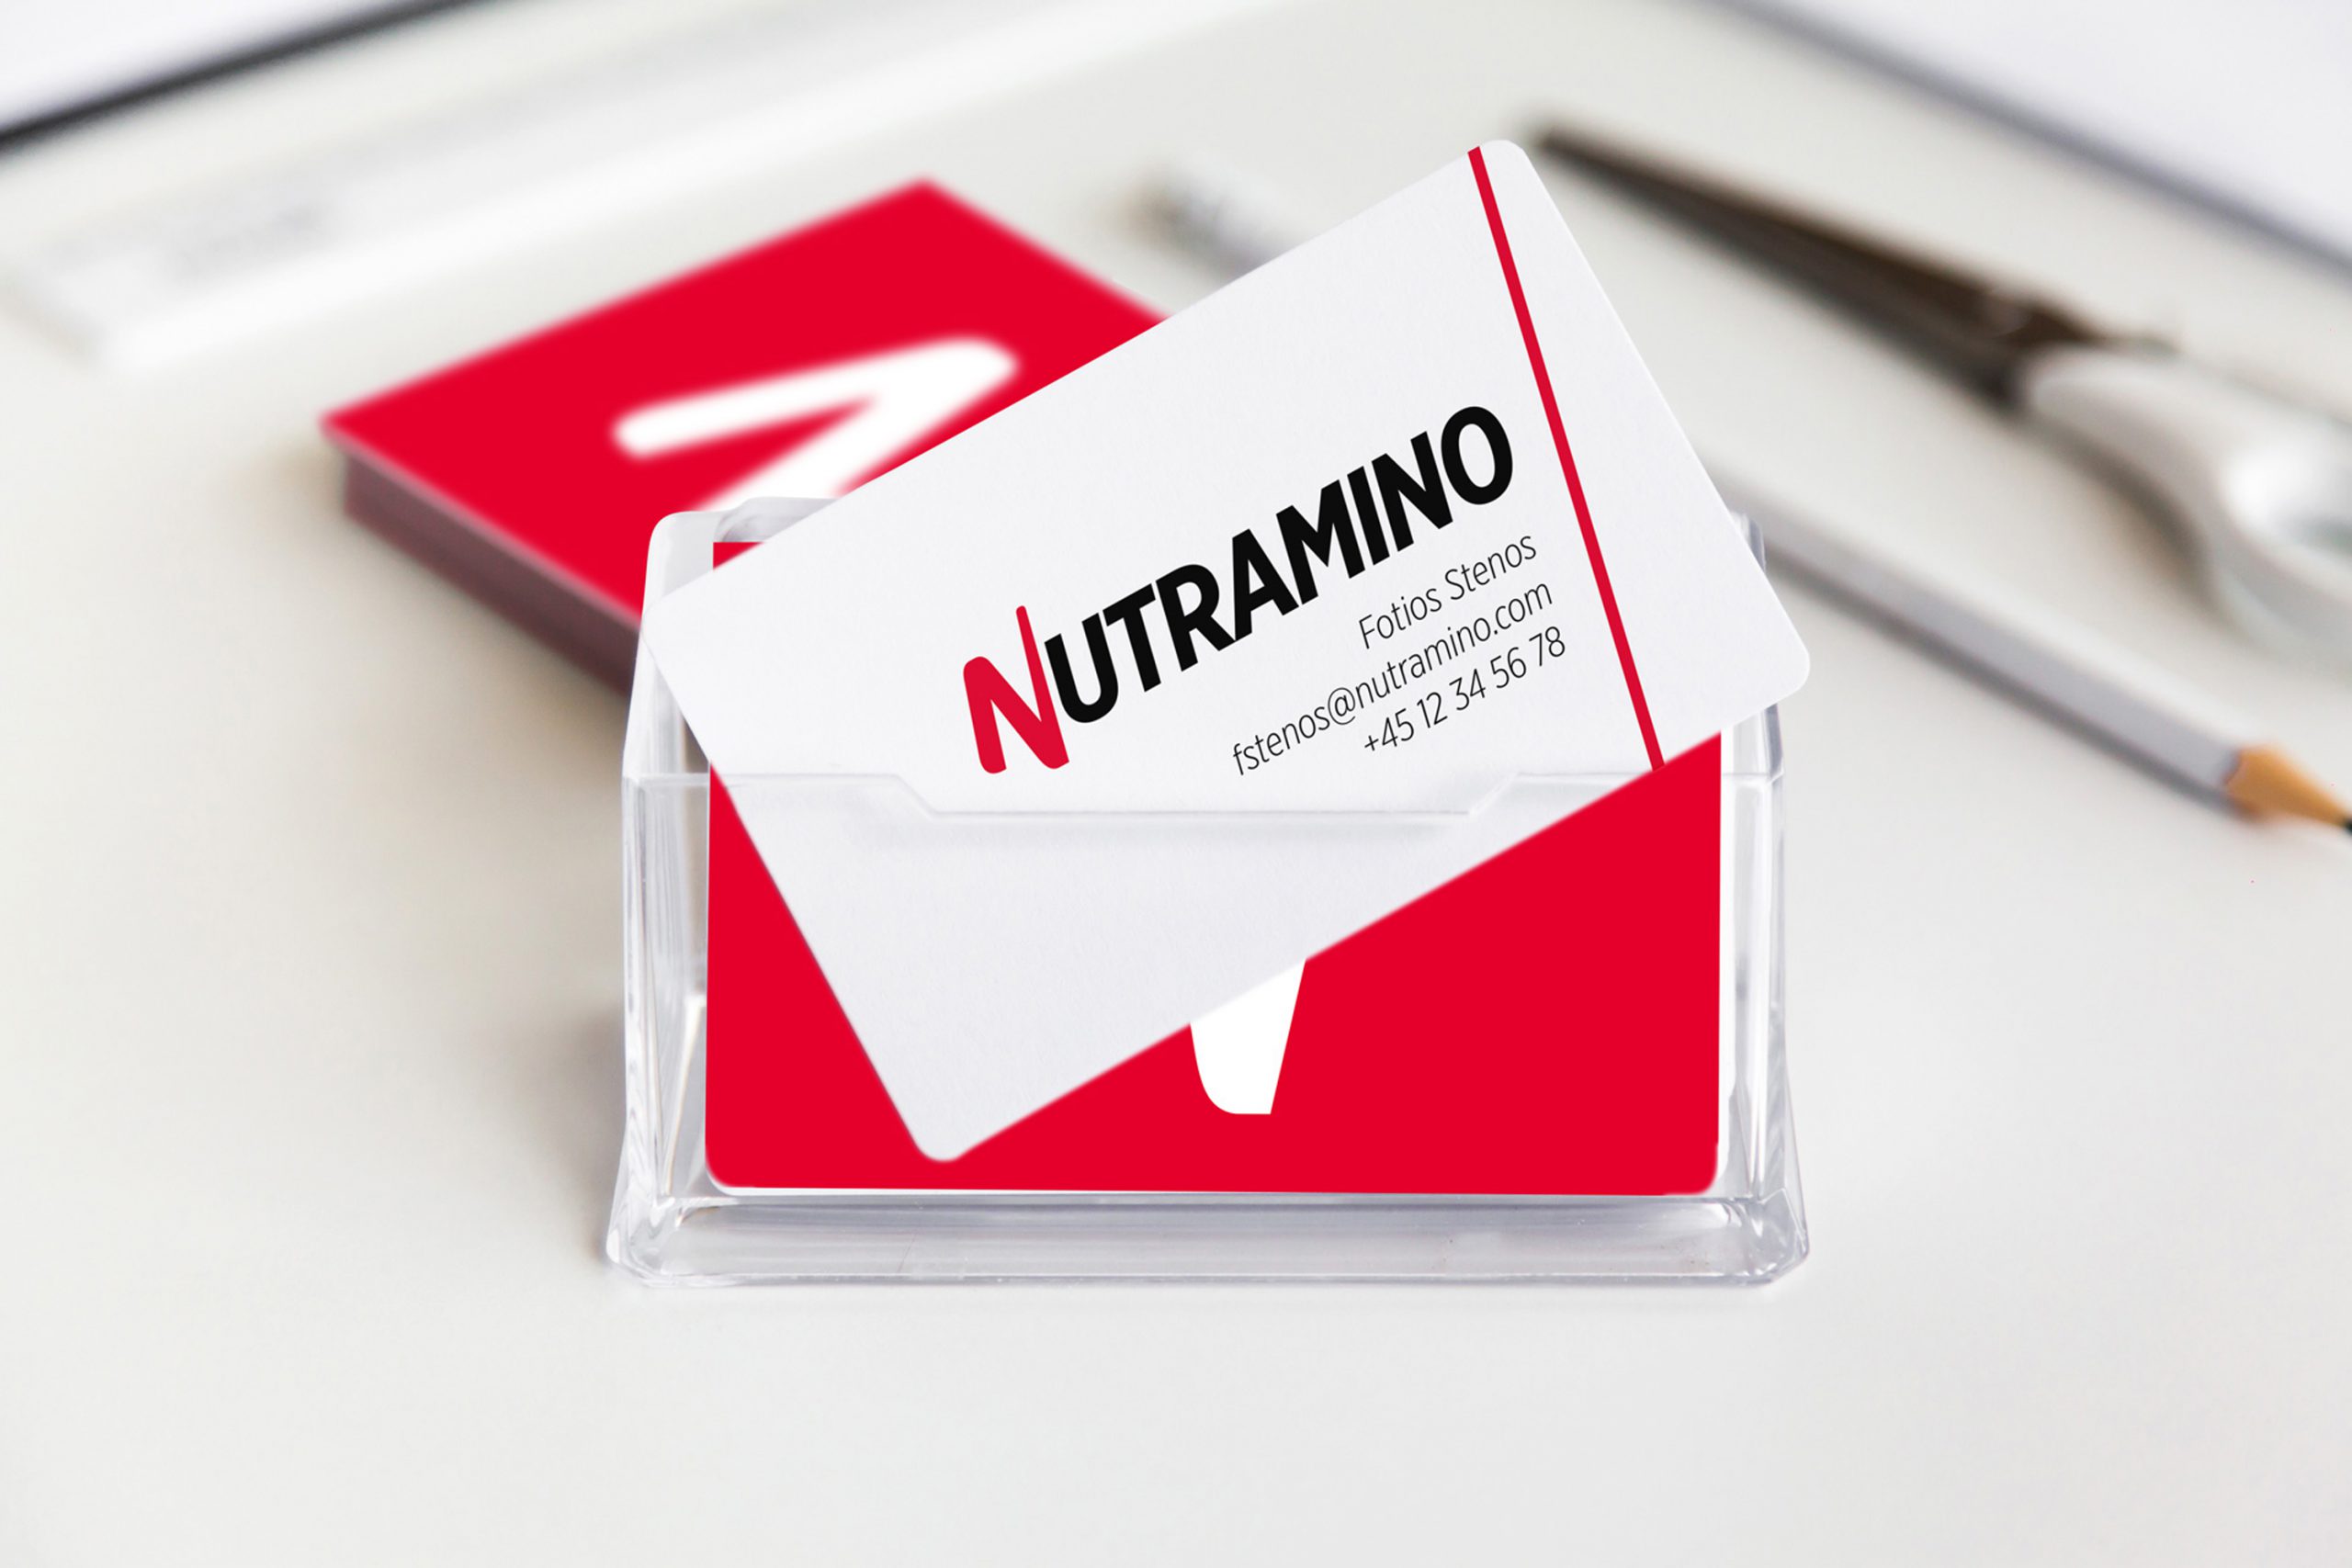 Nutramino_stationary_2.1